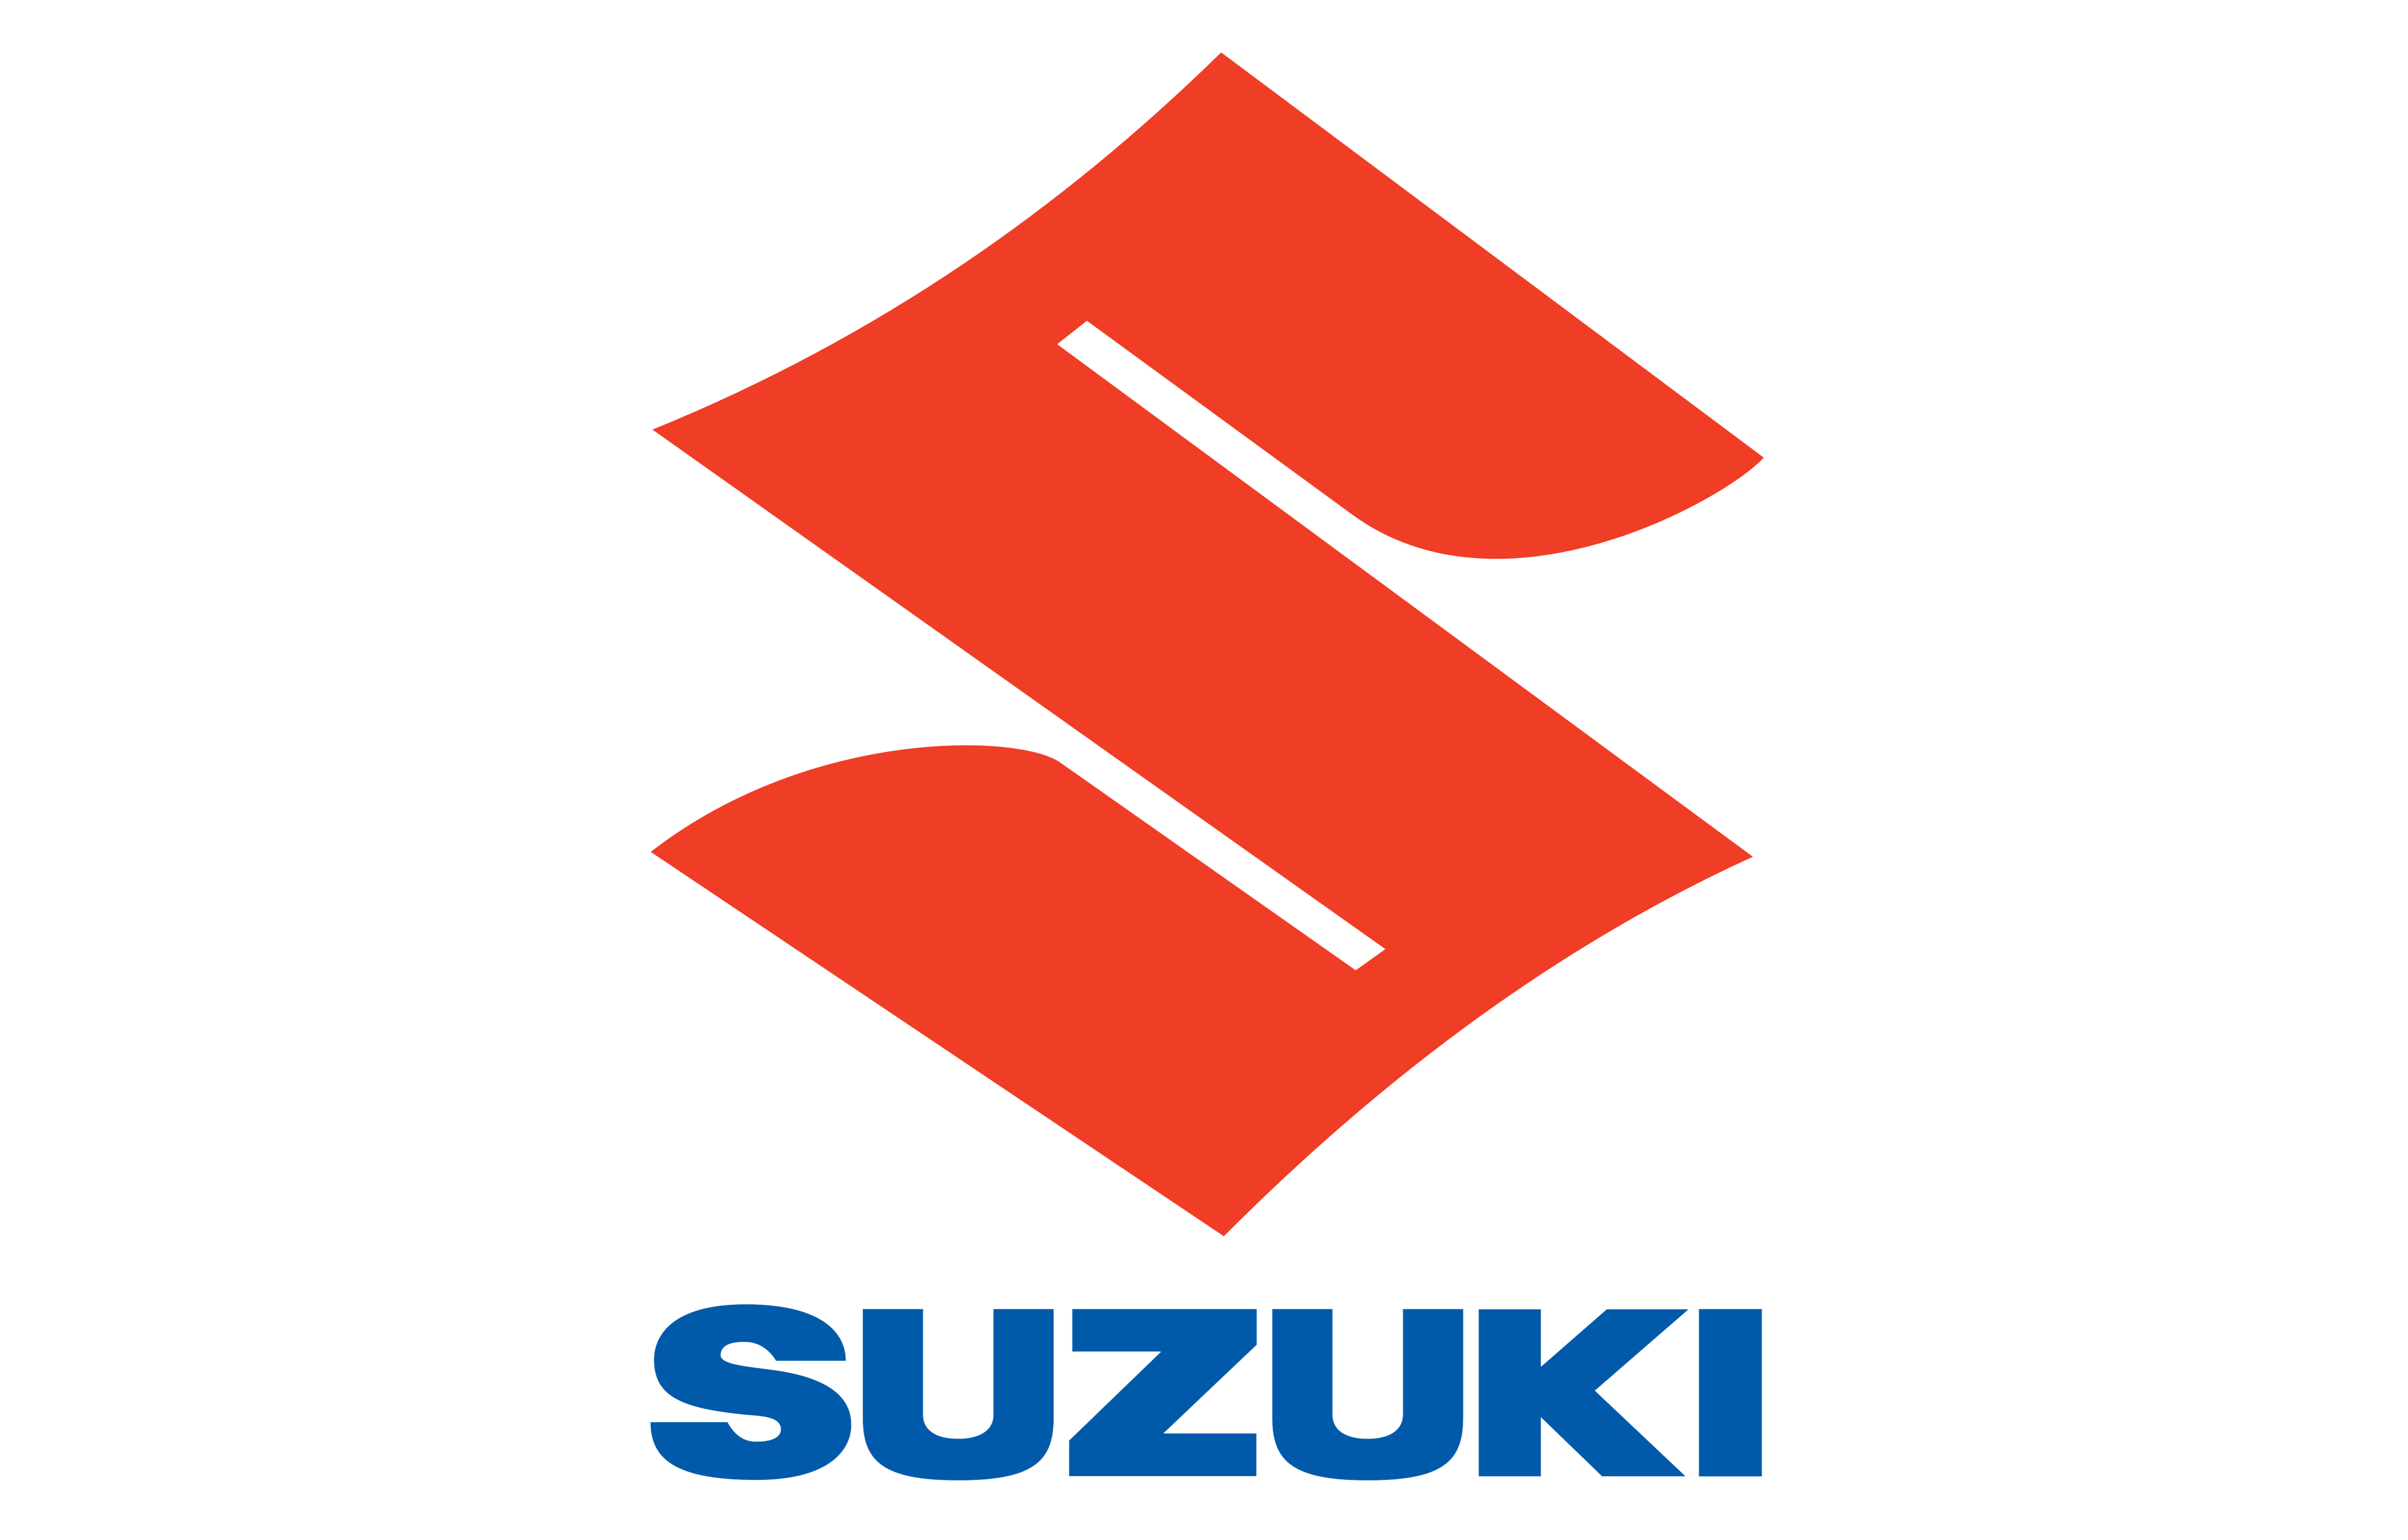 suzuki emblem